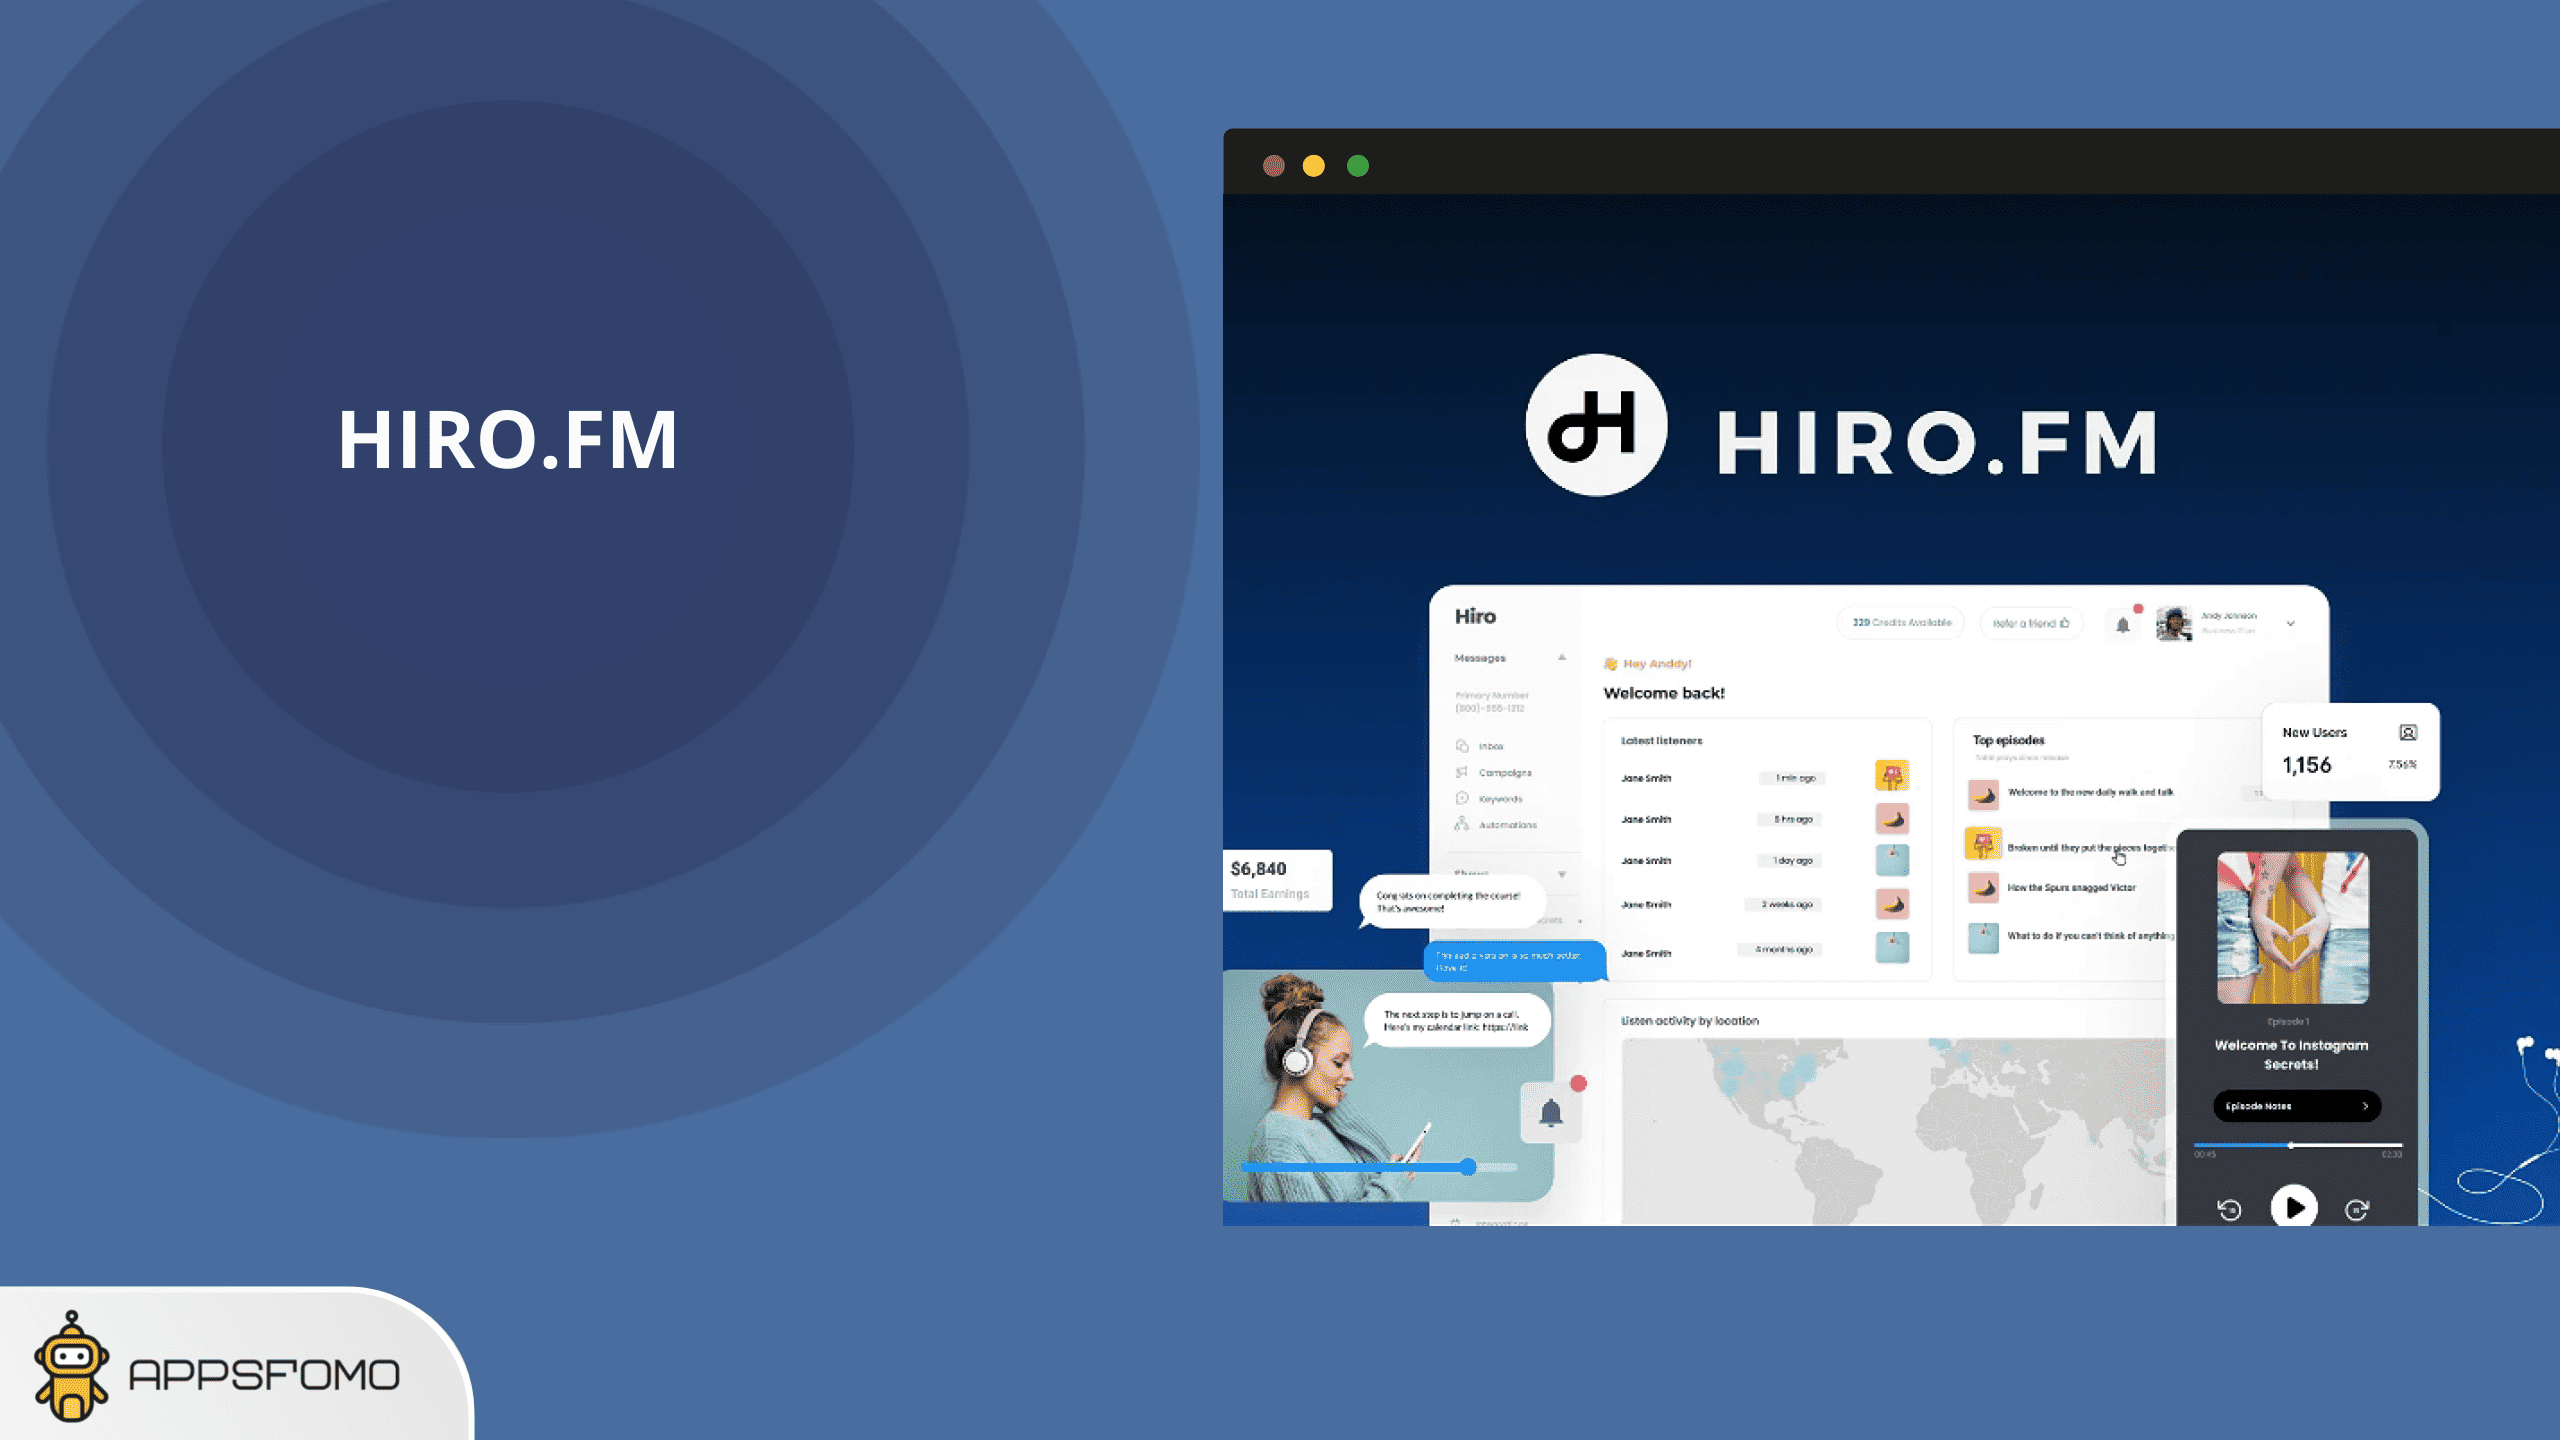 Hiro.fm